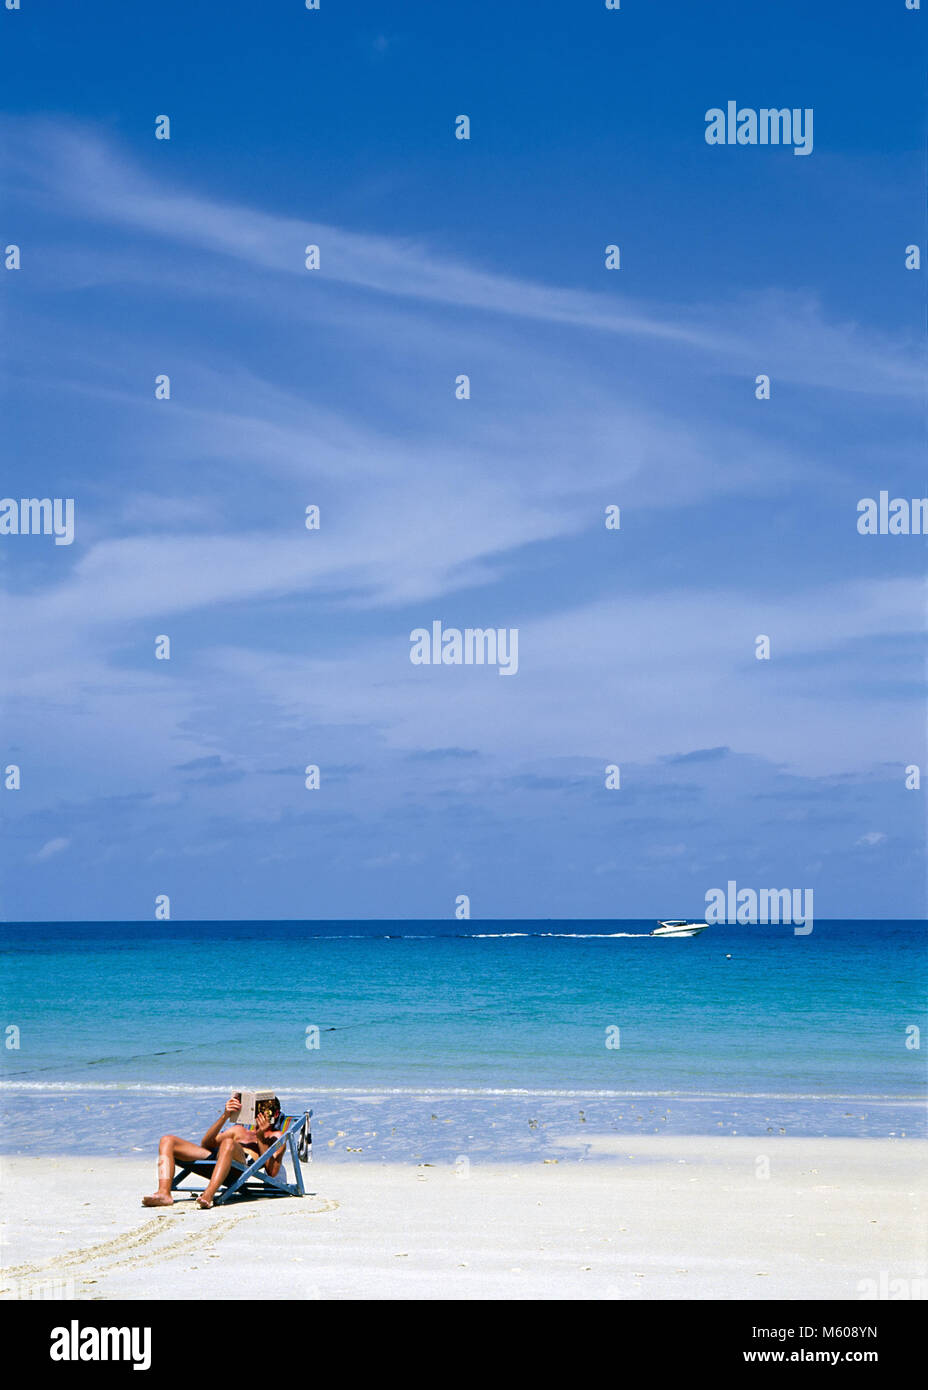 La singola persona che stabilisce nel lettino la lettura di un libro su una spiaggia bianca contro il mare tropicale Foto Stock